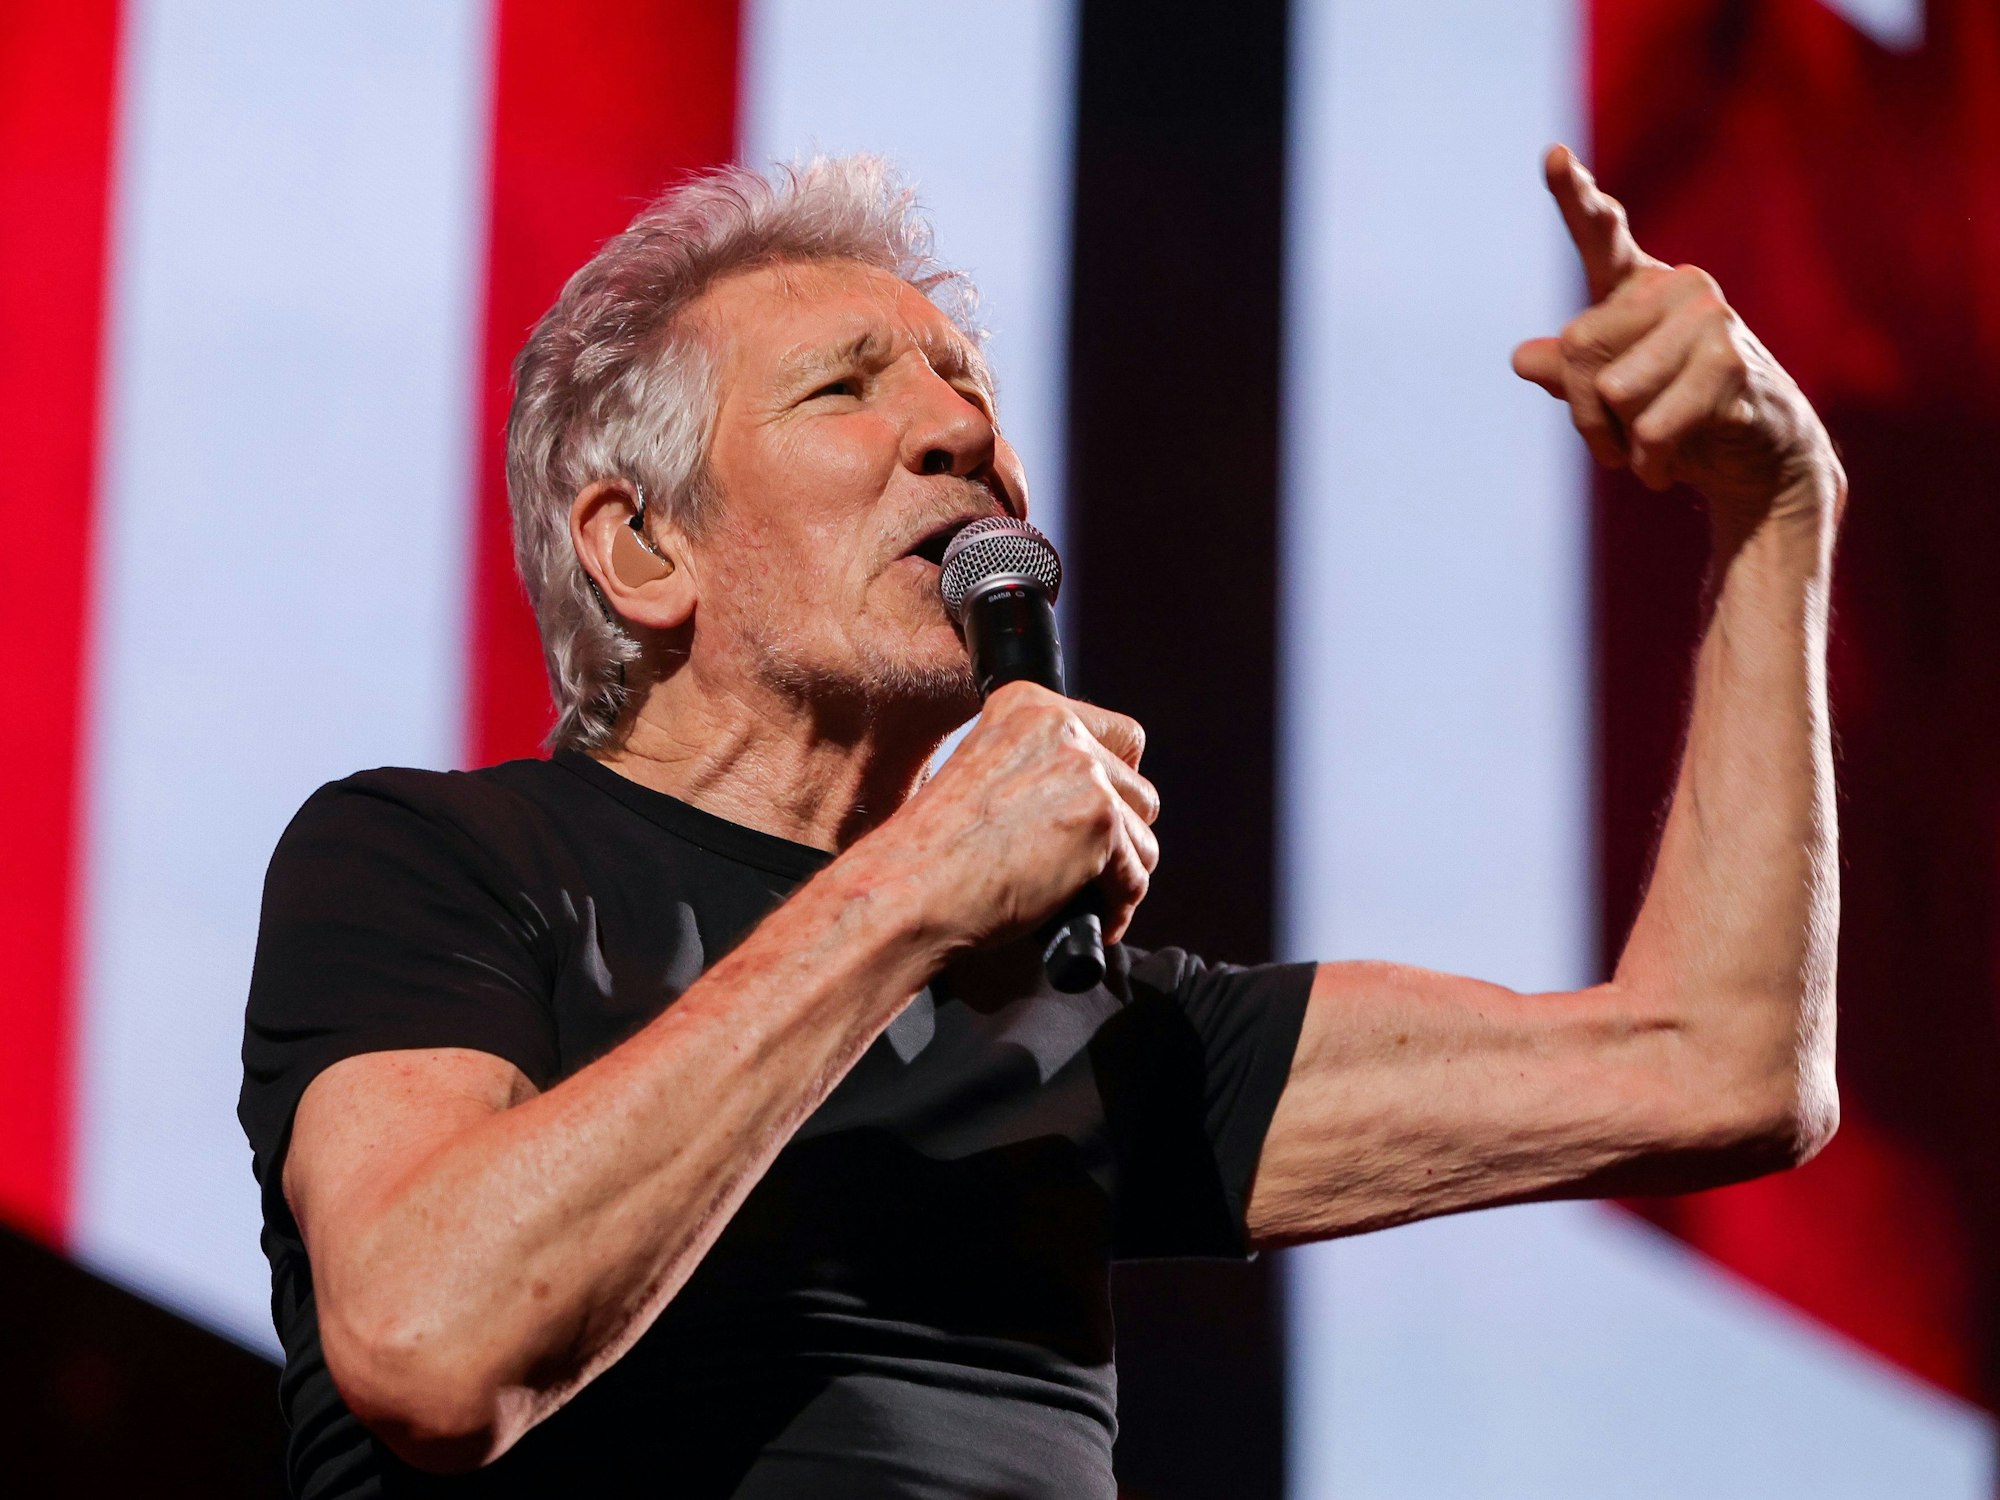 Konzert von Roger Waters in der Lanxess-Arena.